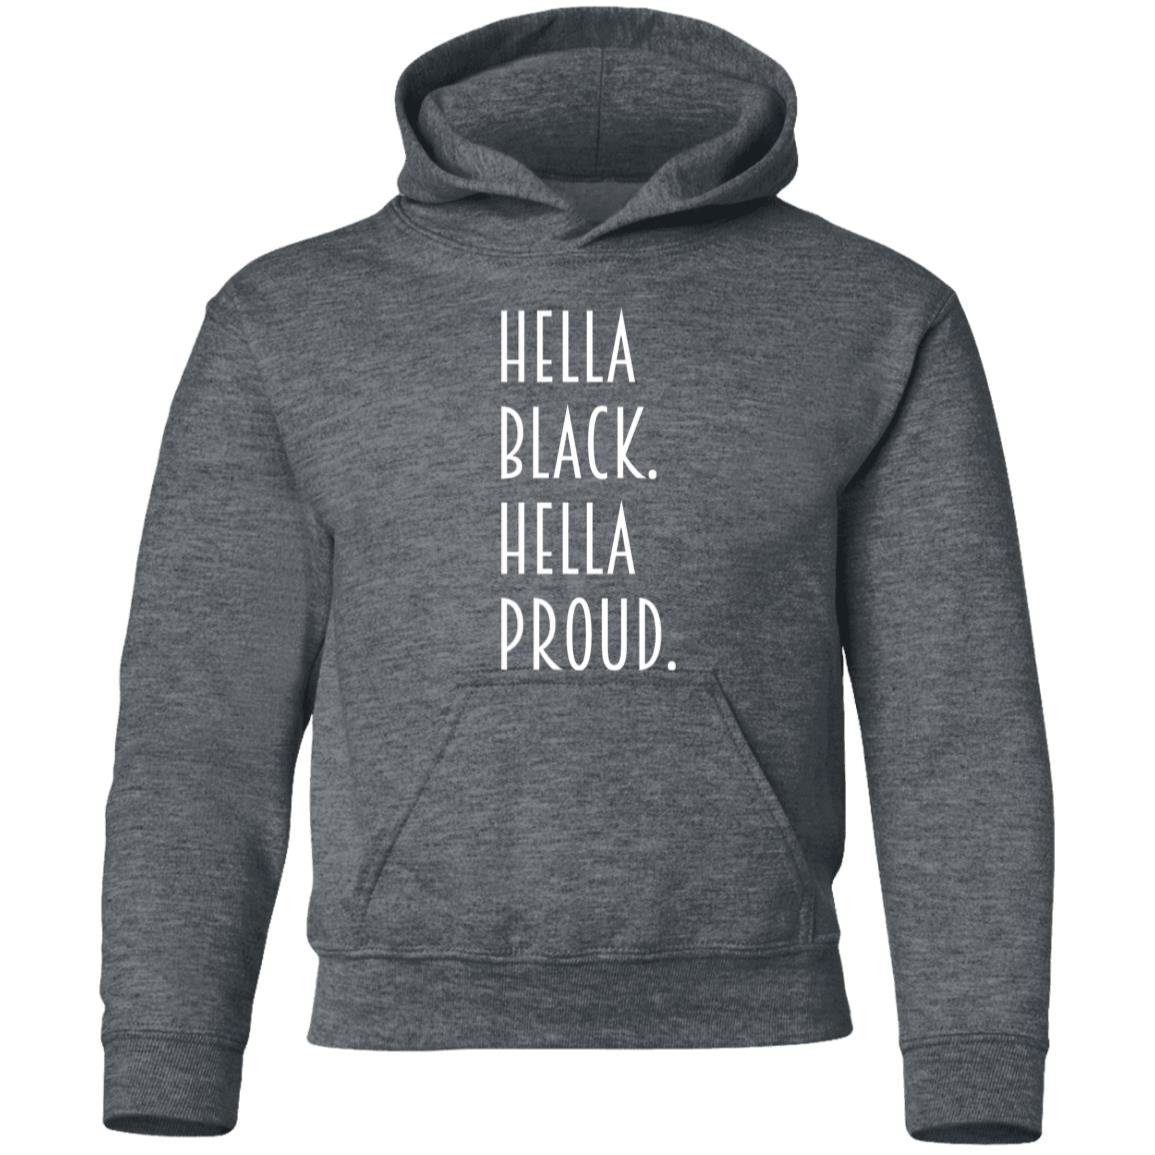 Hella Black Hella Proud. Youth Pullover Hoodie